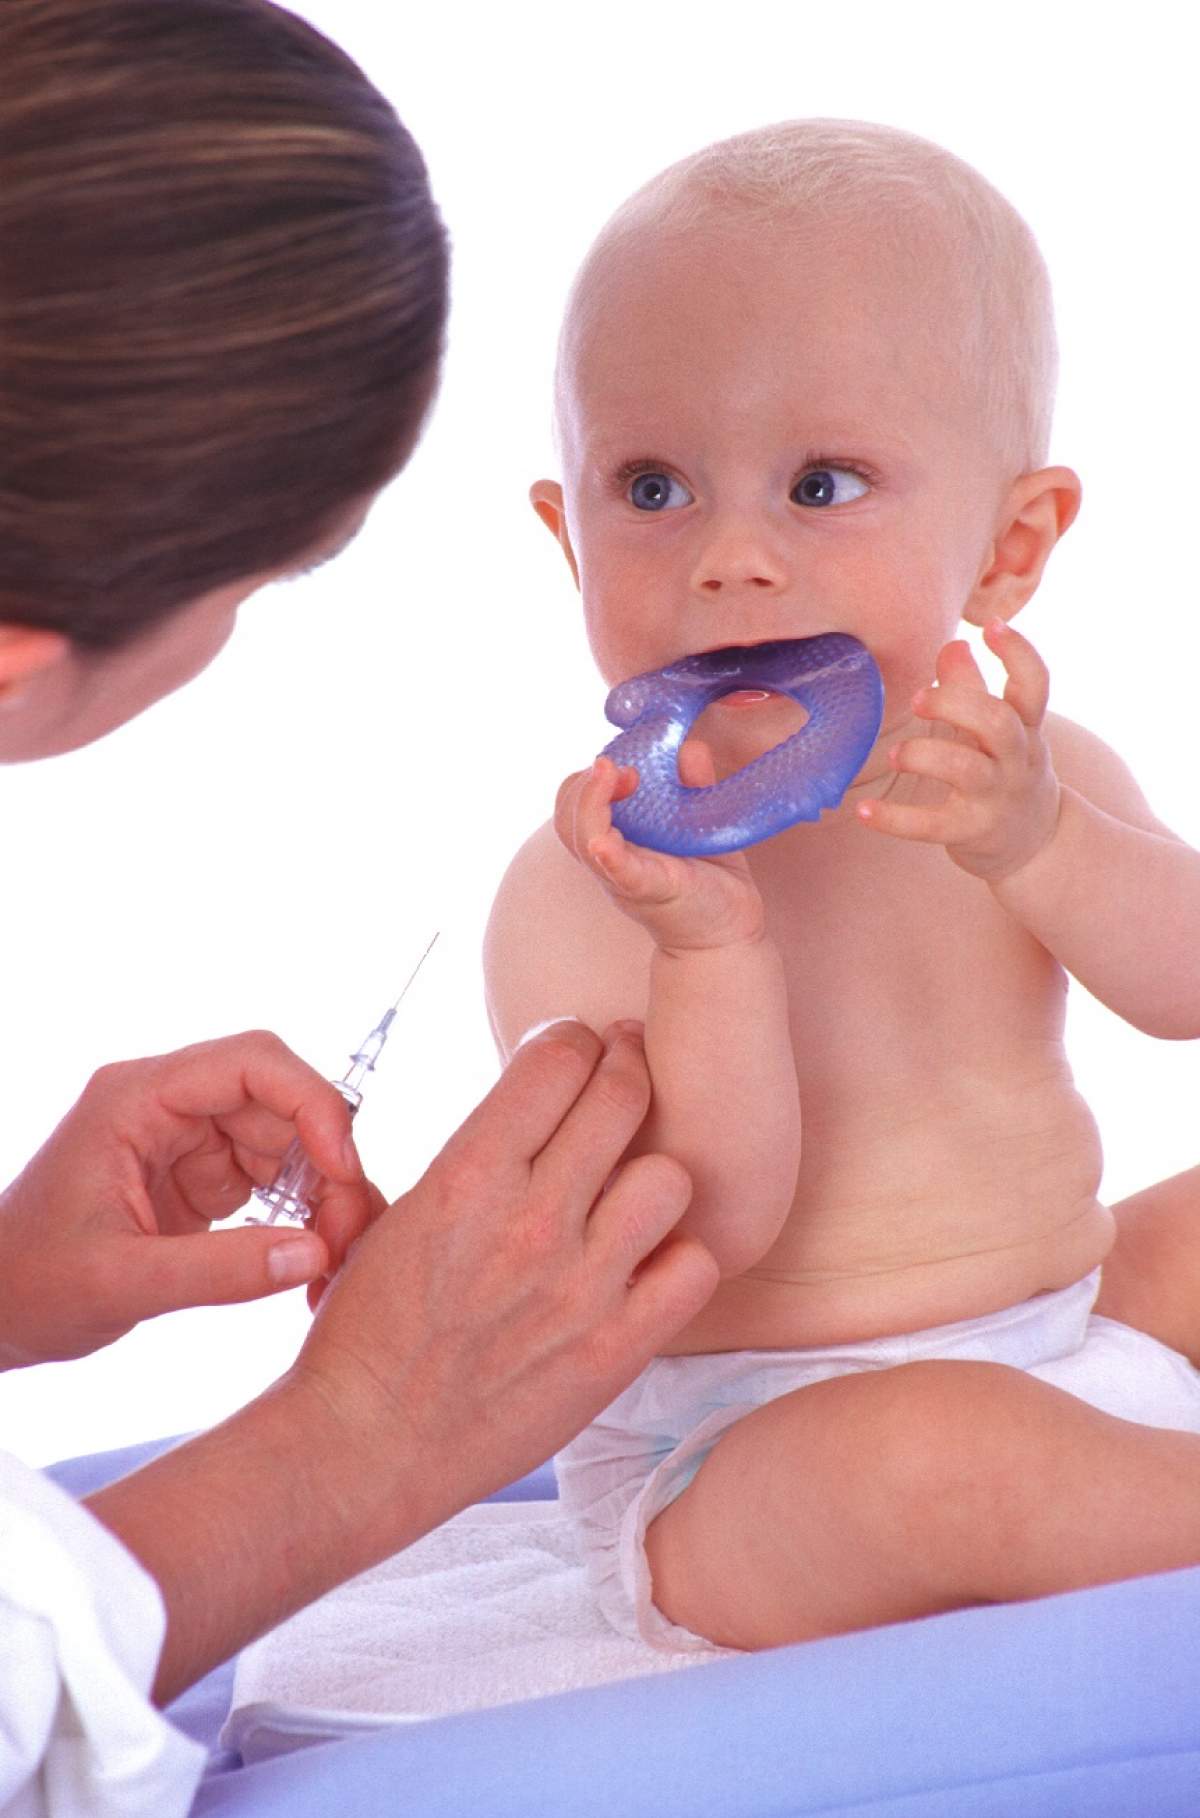 LEGEA VACCINĂRII: Părinții nu pot fi acuzați de rele tratamente dacă nu își vaccinează copiii